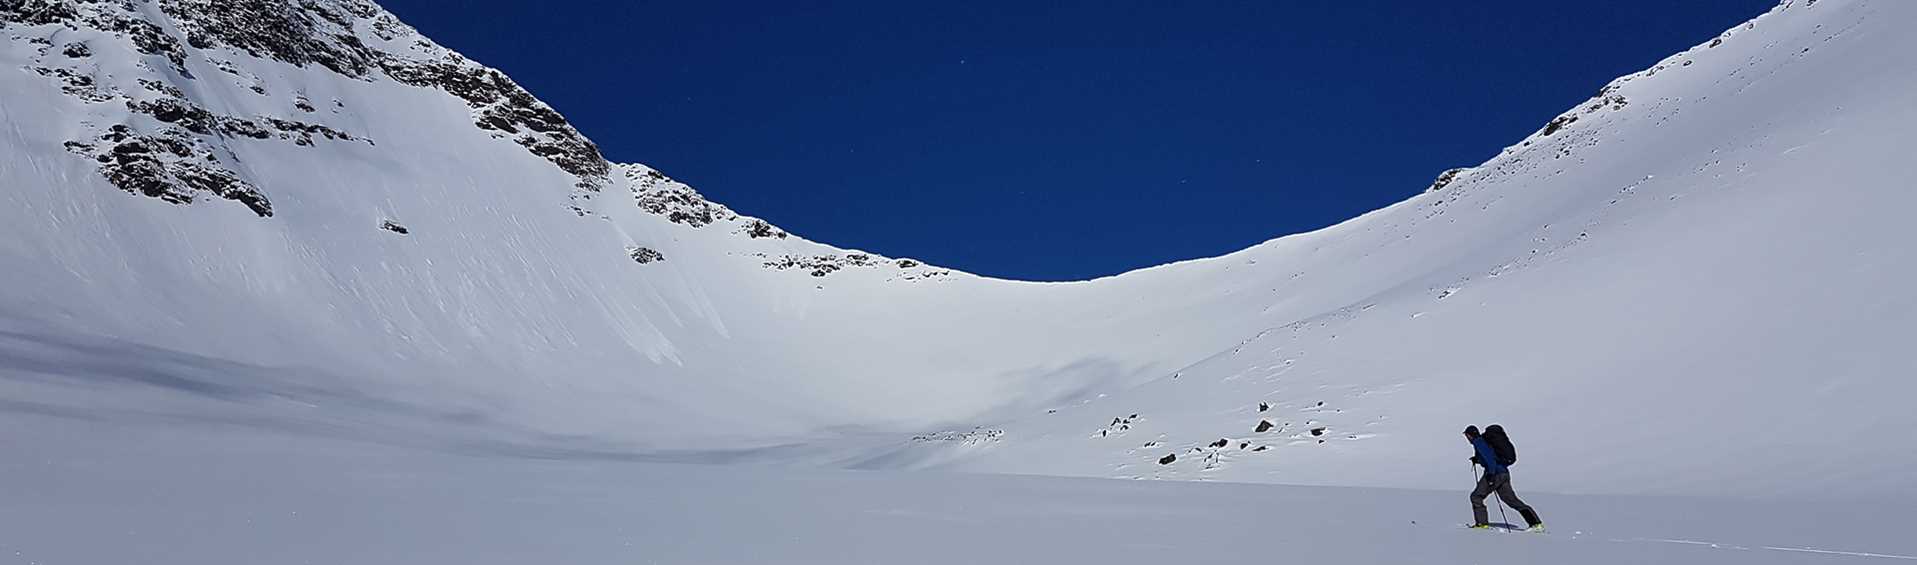 Ensam skidåkare färdas över ett snöfält